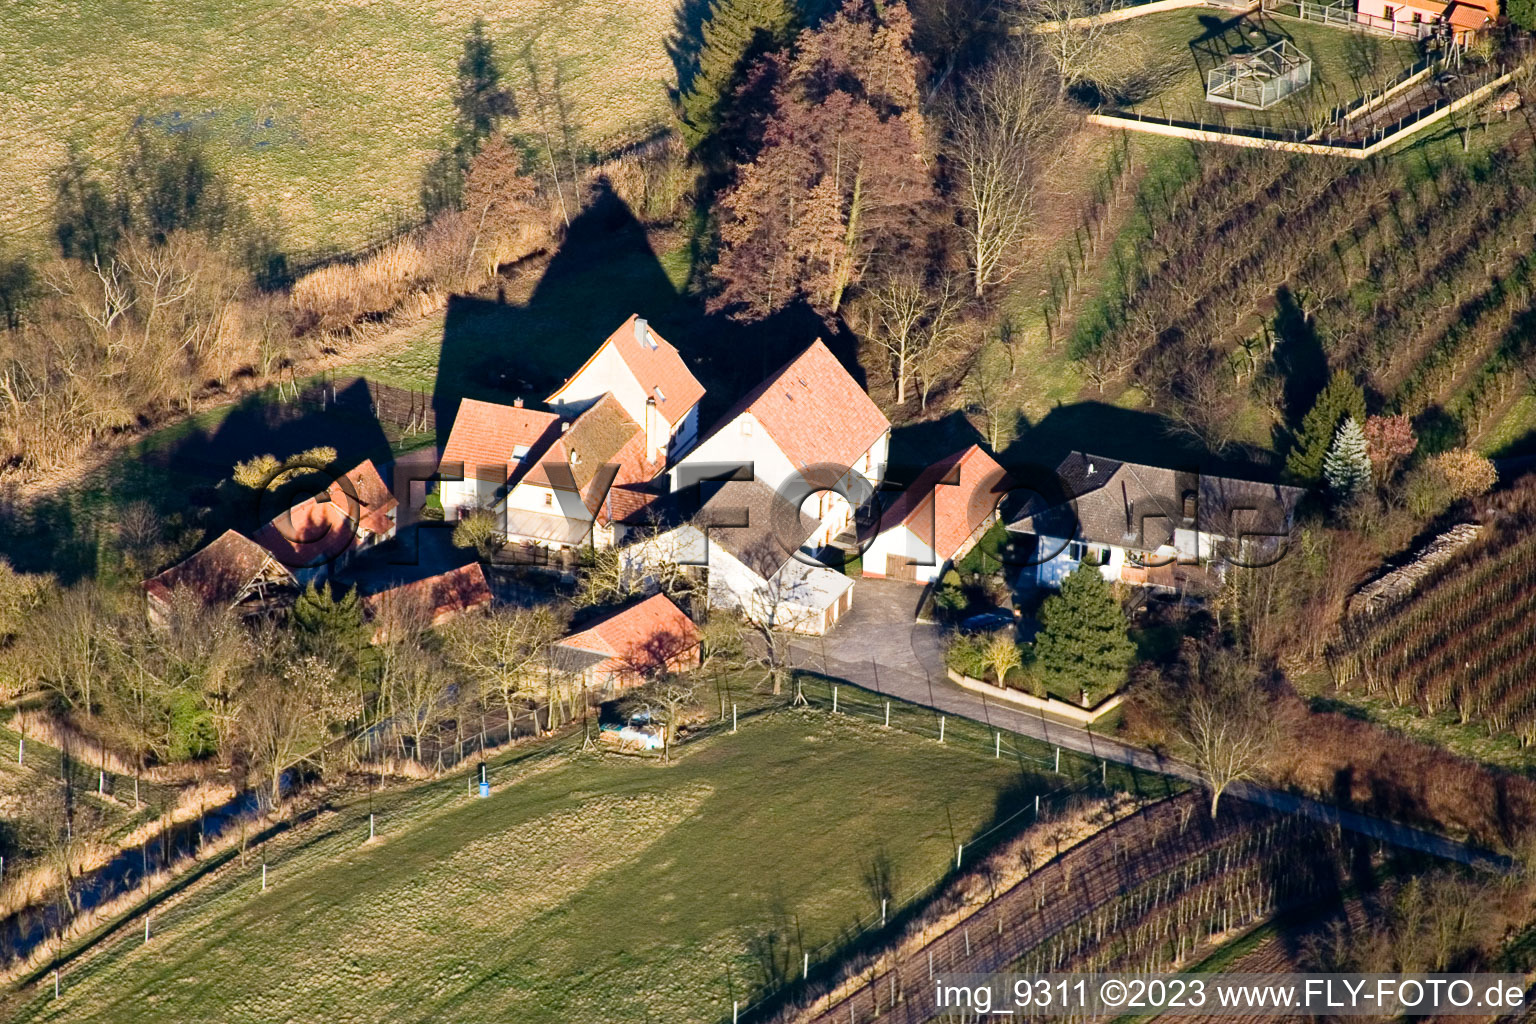 Winden, Windener Mühle im Bundesland Rheinland-Pfalz, Deutschland aus der Luft betrachtet